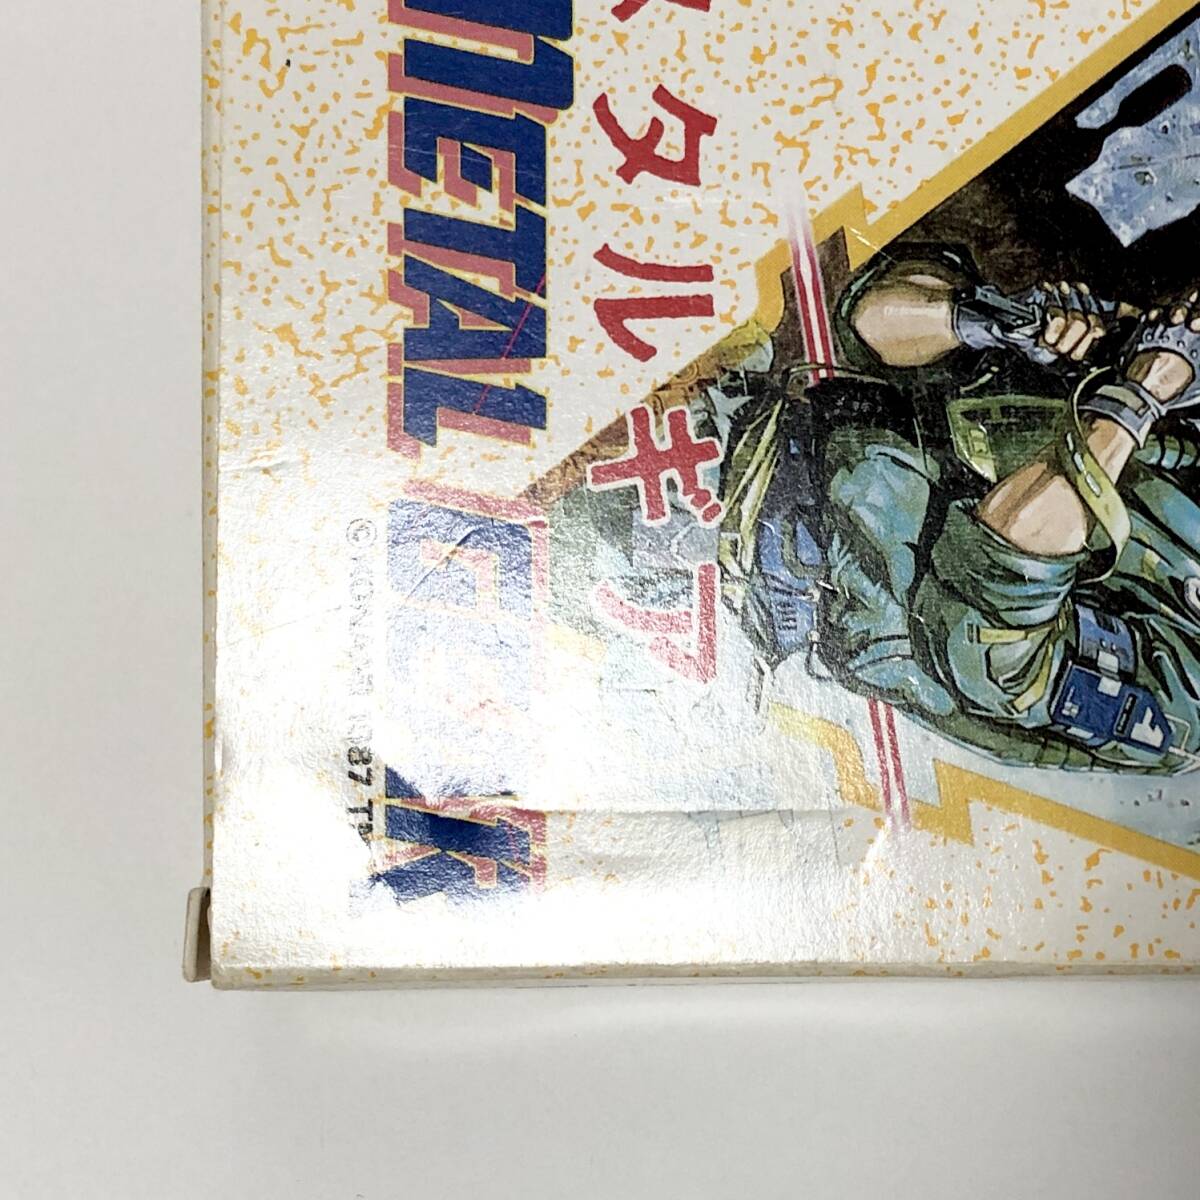 ファミコン メタルギア 箱説付き キャラカード付き 痛みあり 動作確認済み コナミ Nintendo Famicom Metal Gear CIB Tested Konamiの画像5